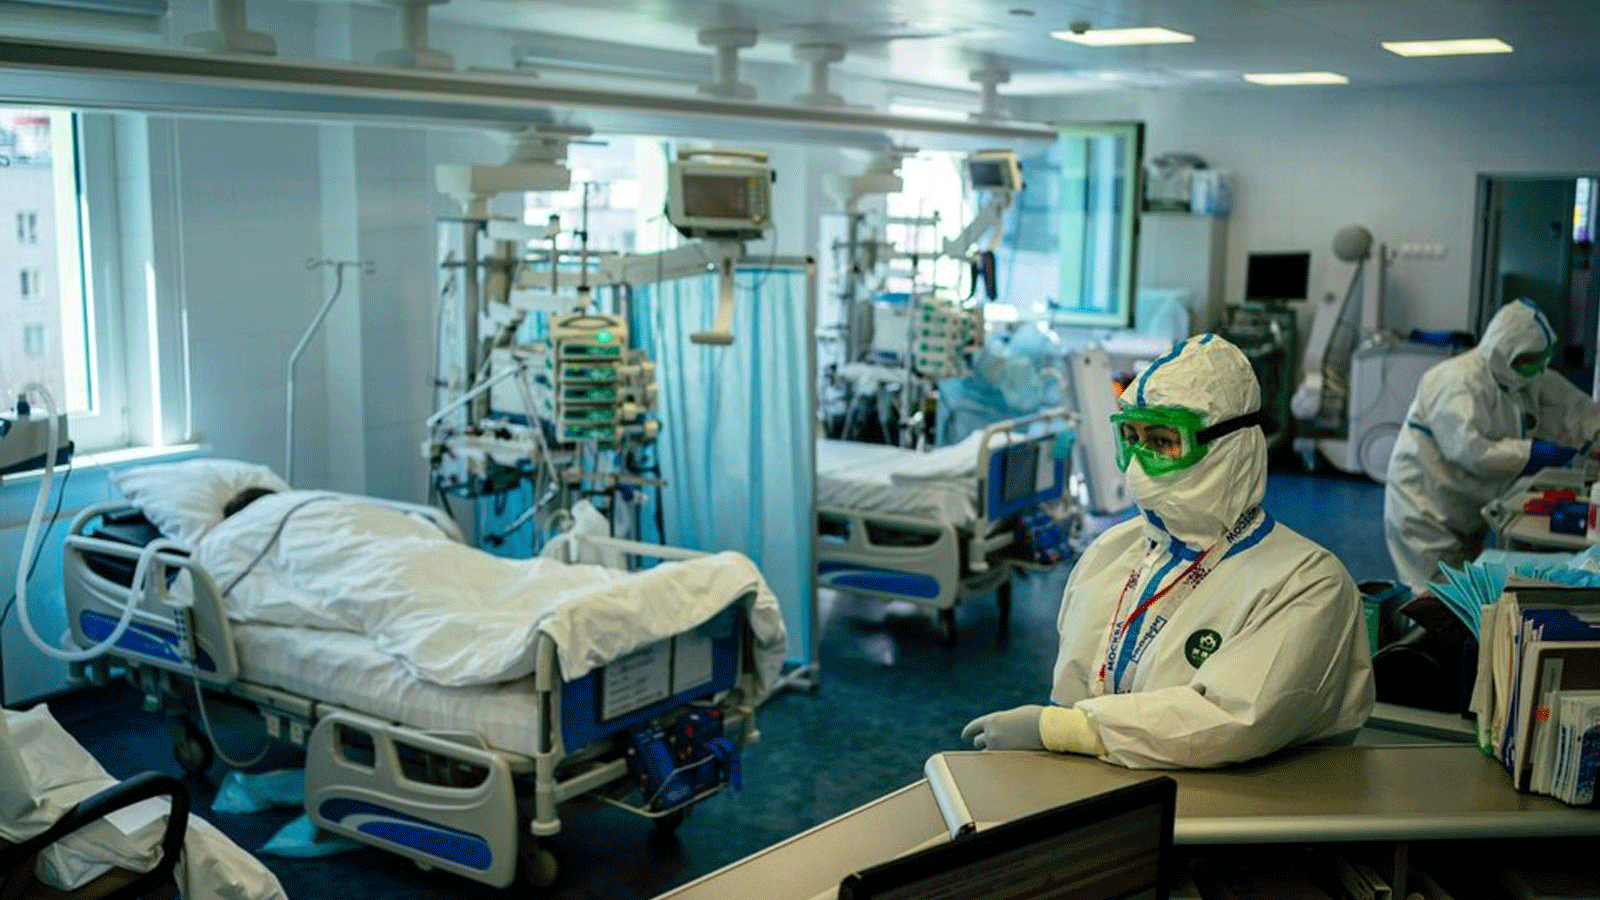  العاملون الطبيون يراقبون المرضى المصابين بـ COVID-19 في جناح العناية المركزة في مستشفى K + 31 الخاص بموسكو